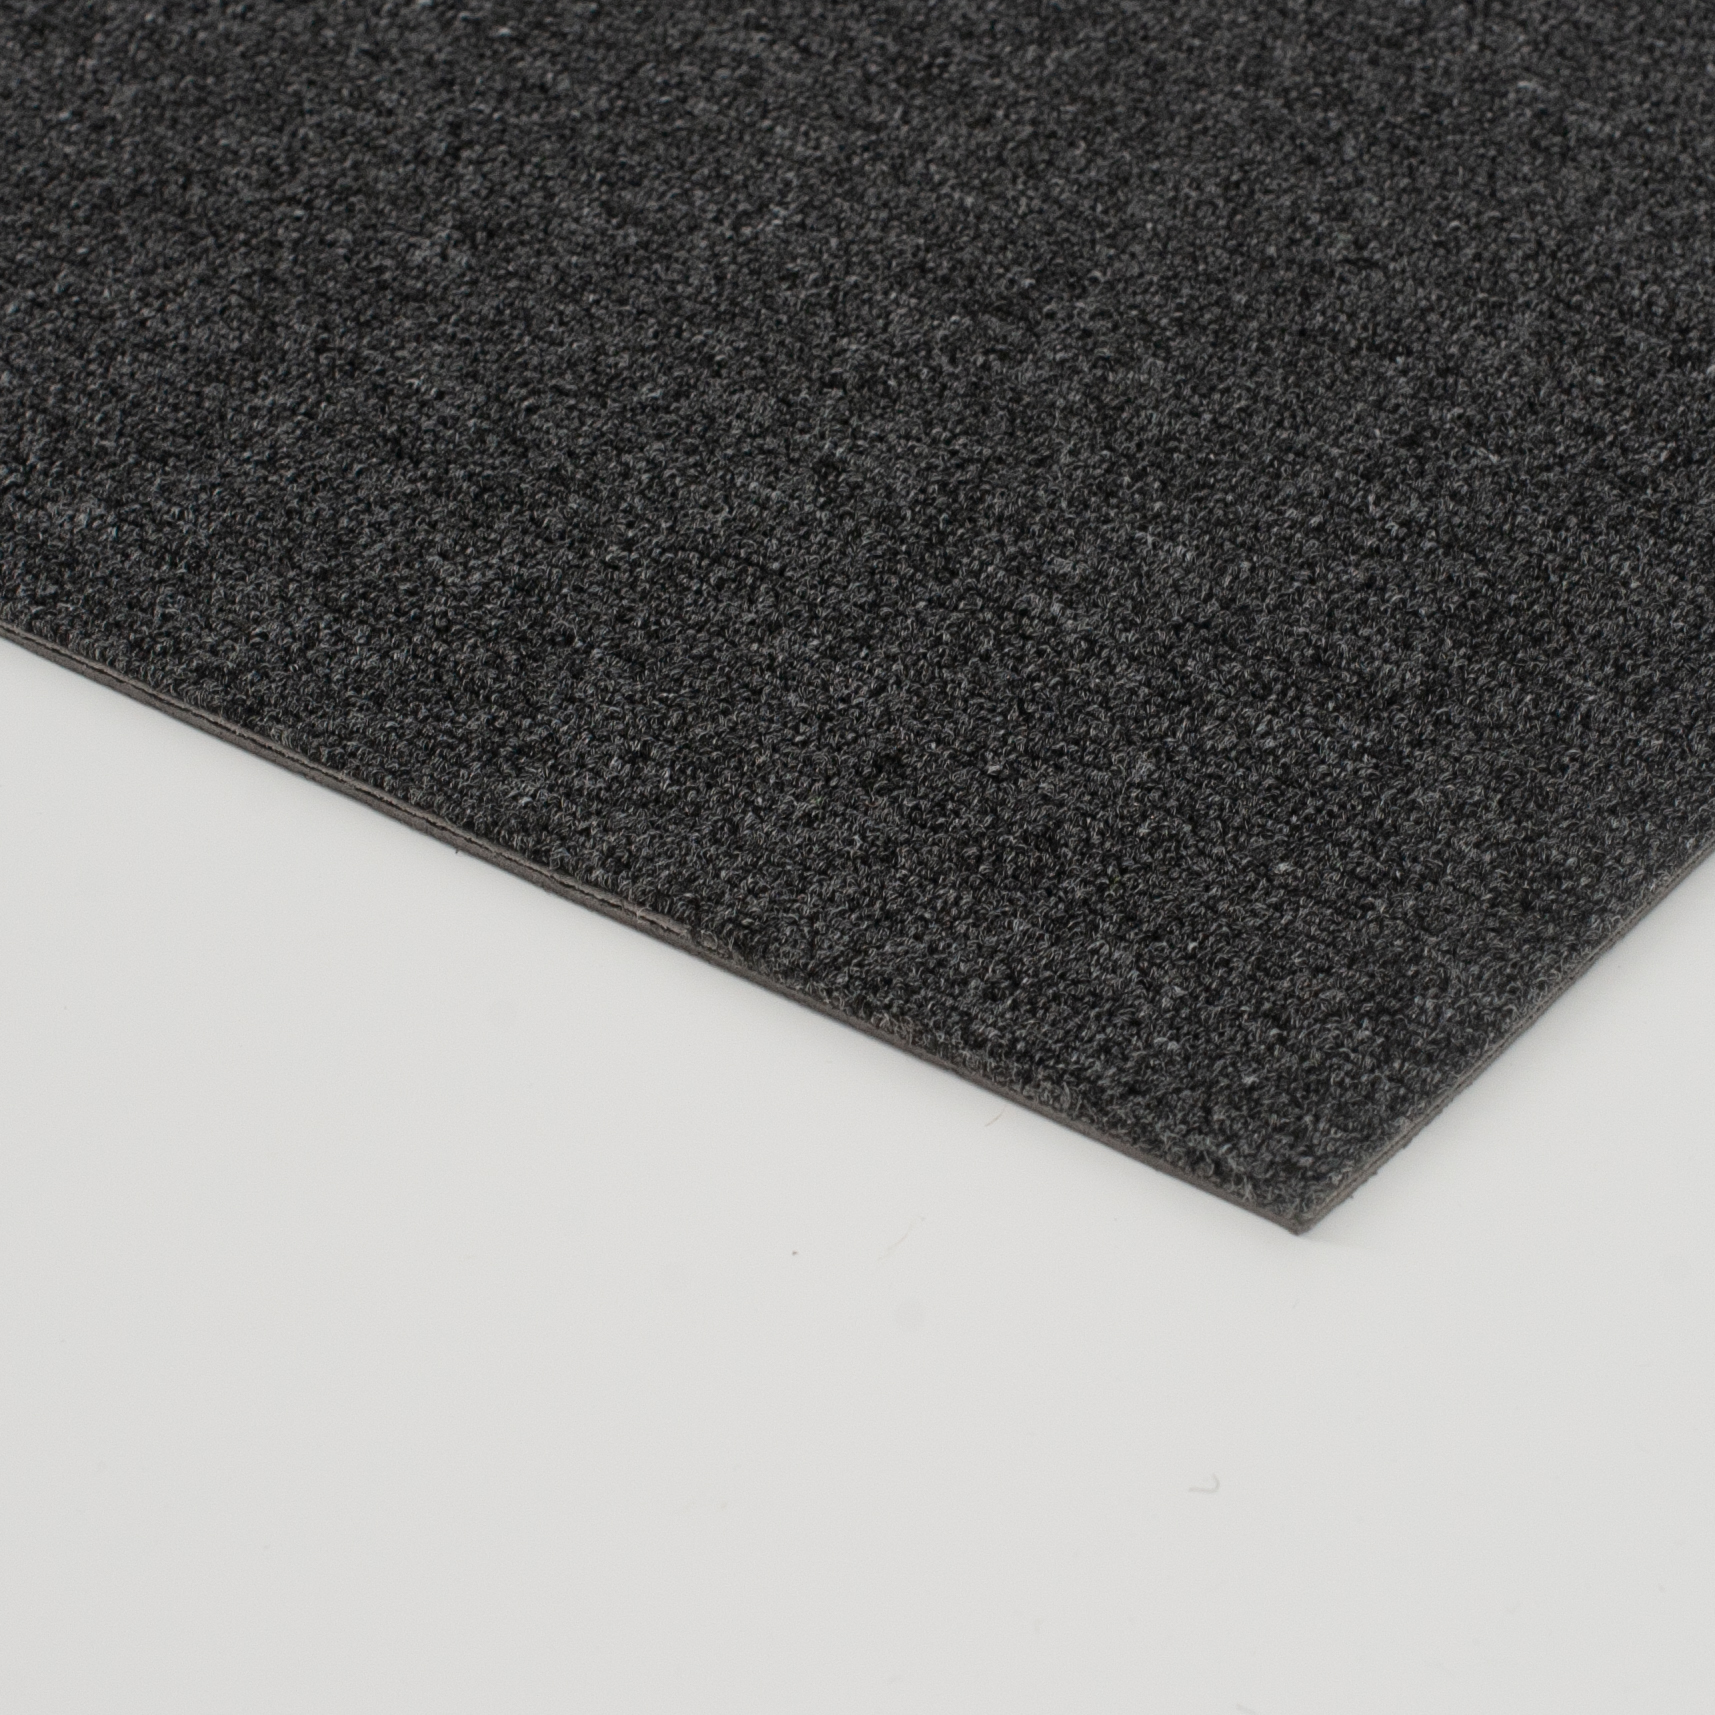 長方形のビニールの黒いカーペットのタイル